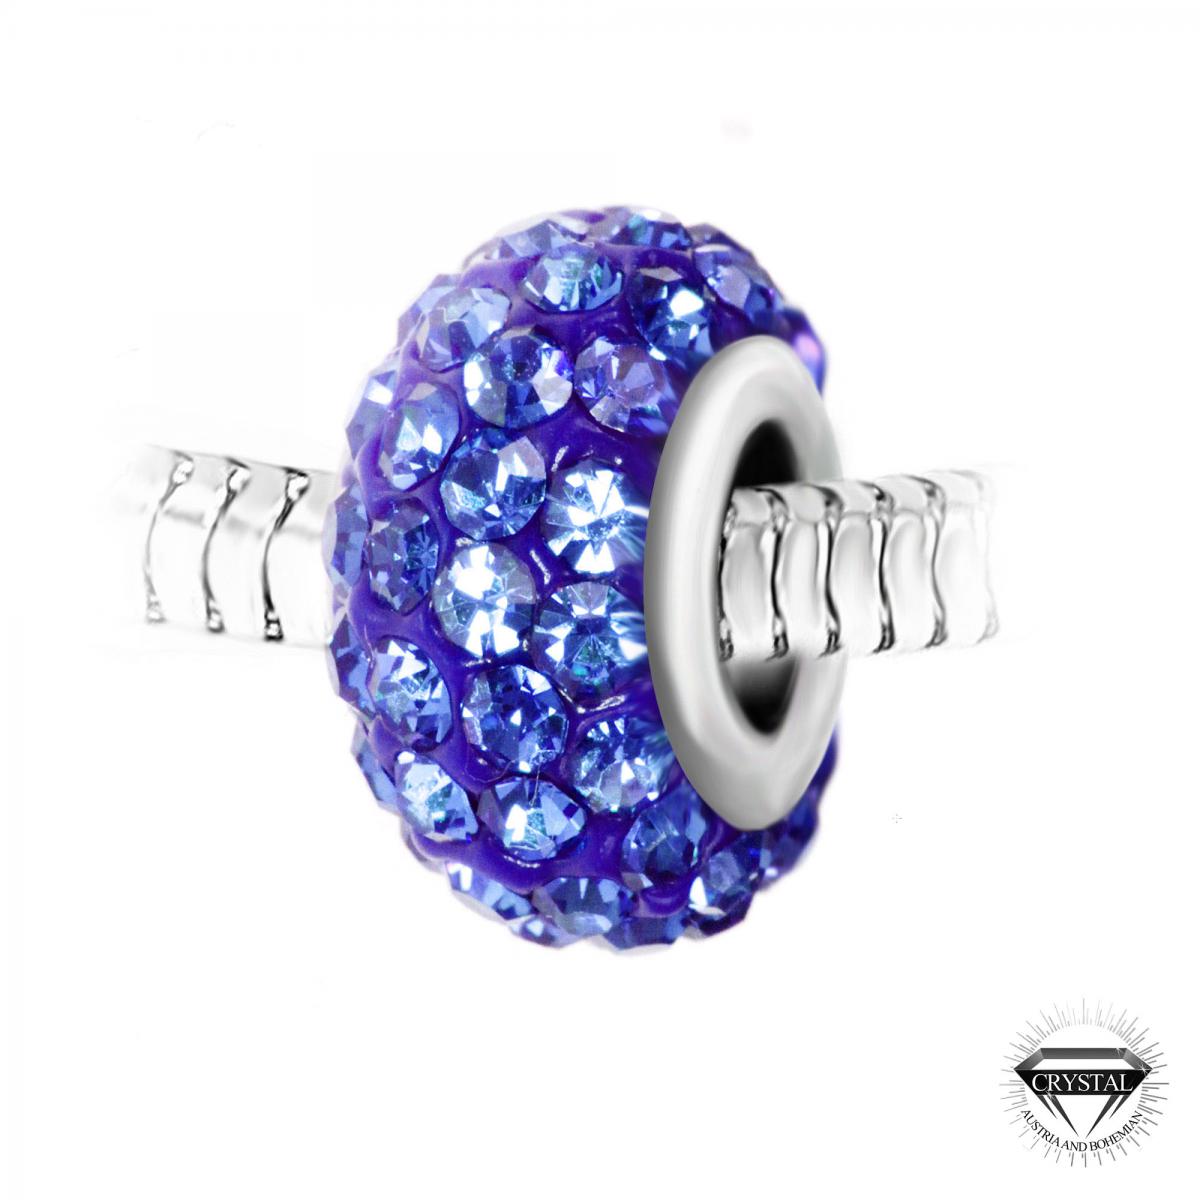 Promo : Charm perle pavé de cristaux bleus et acier par SC Crystal BEA0034